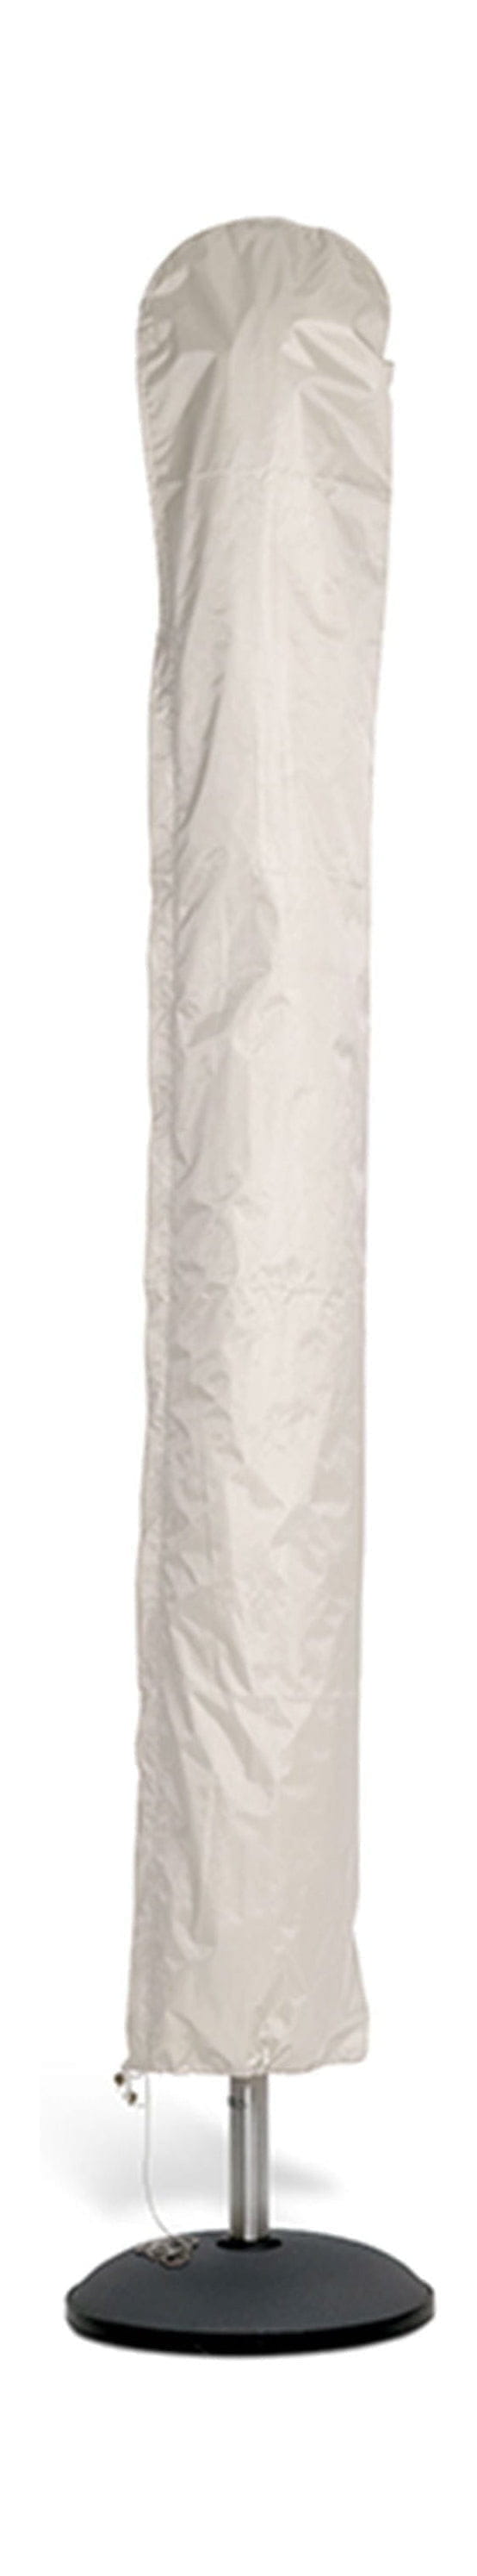 Skagerak -täckning för Parasol 330x330 cm, av vit